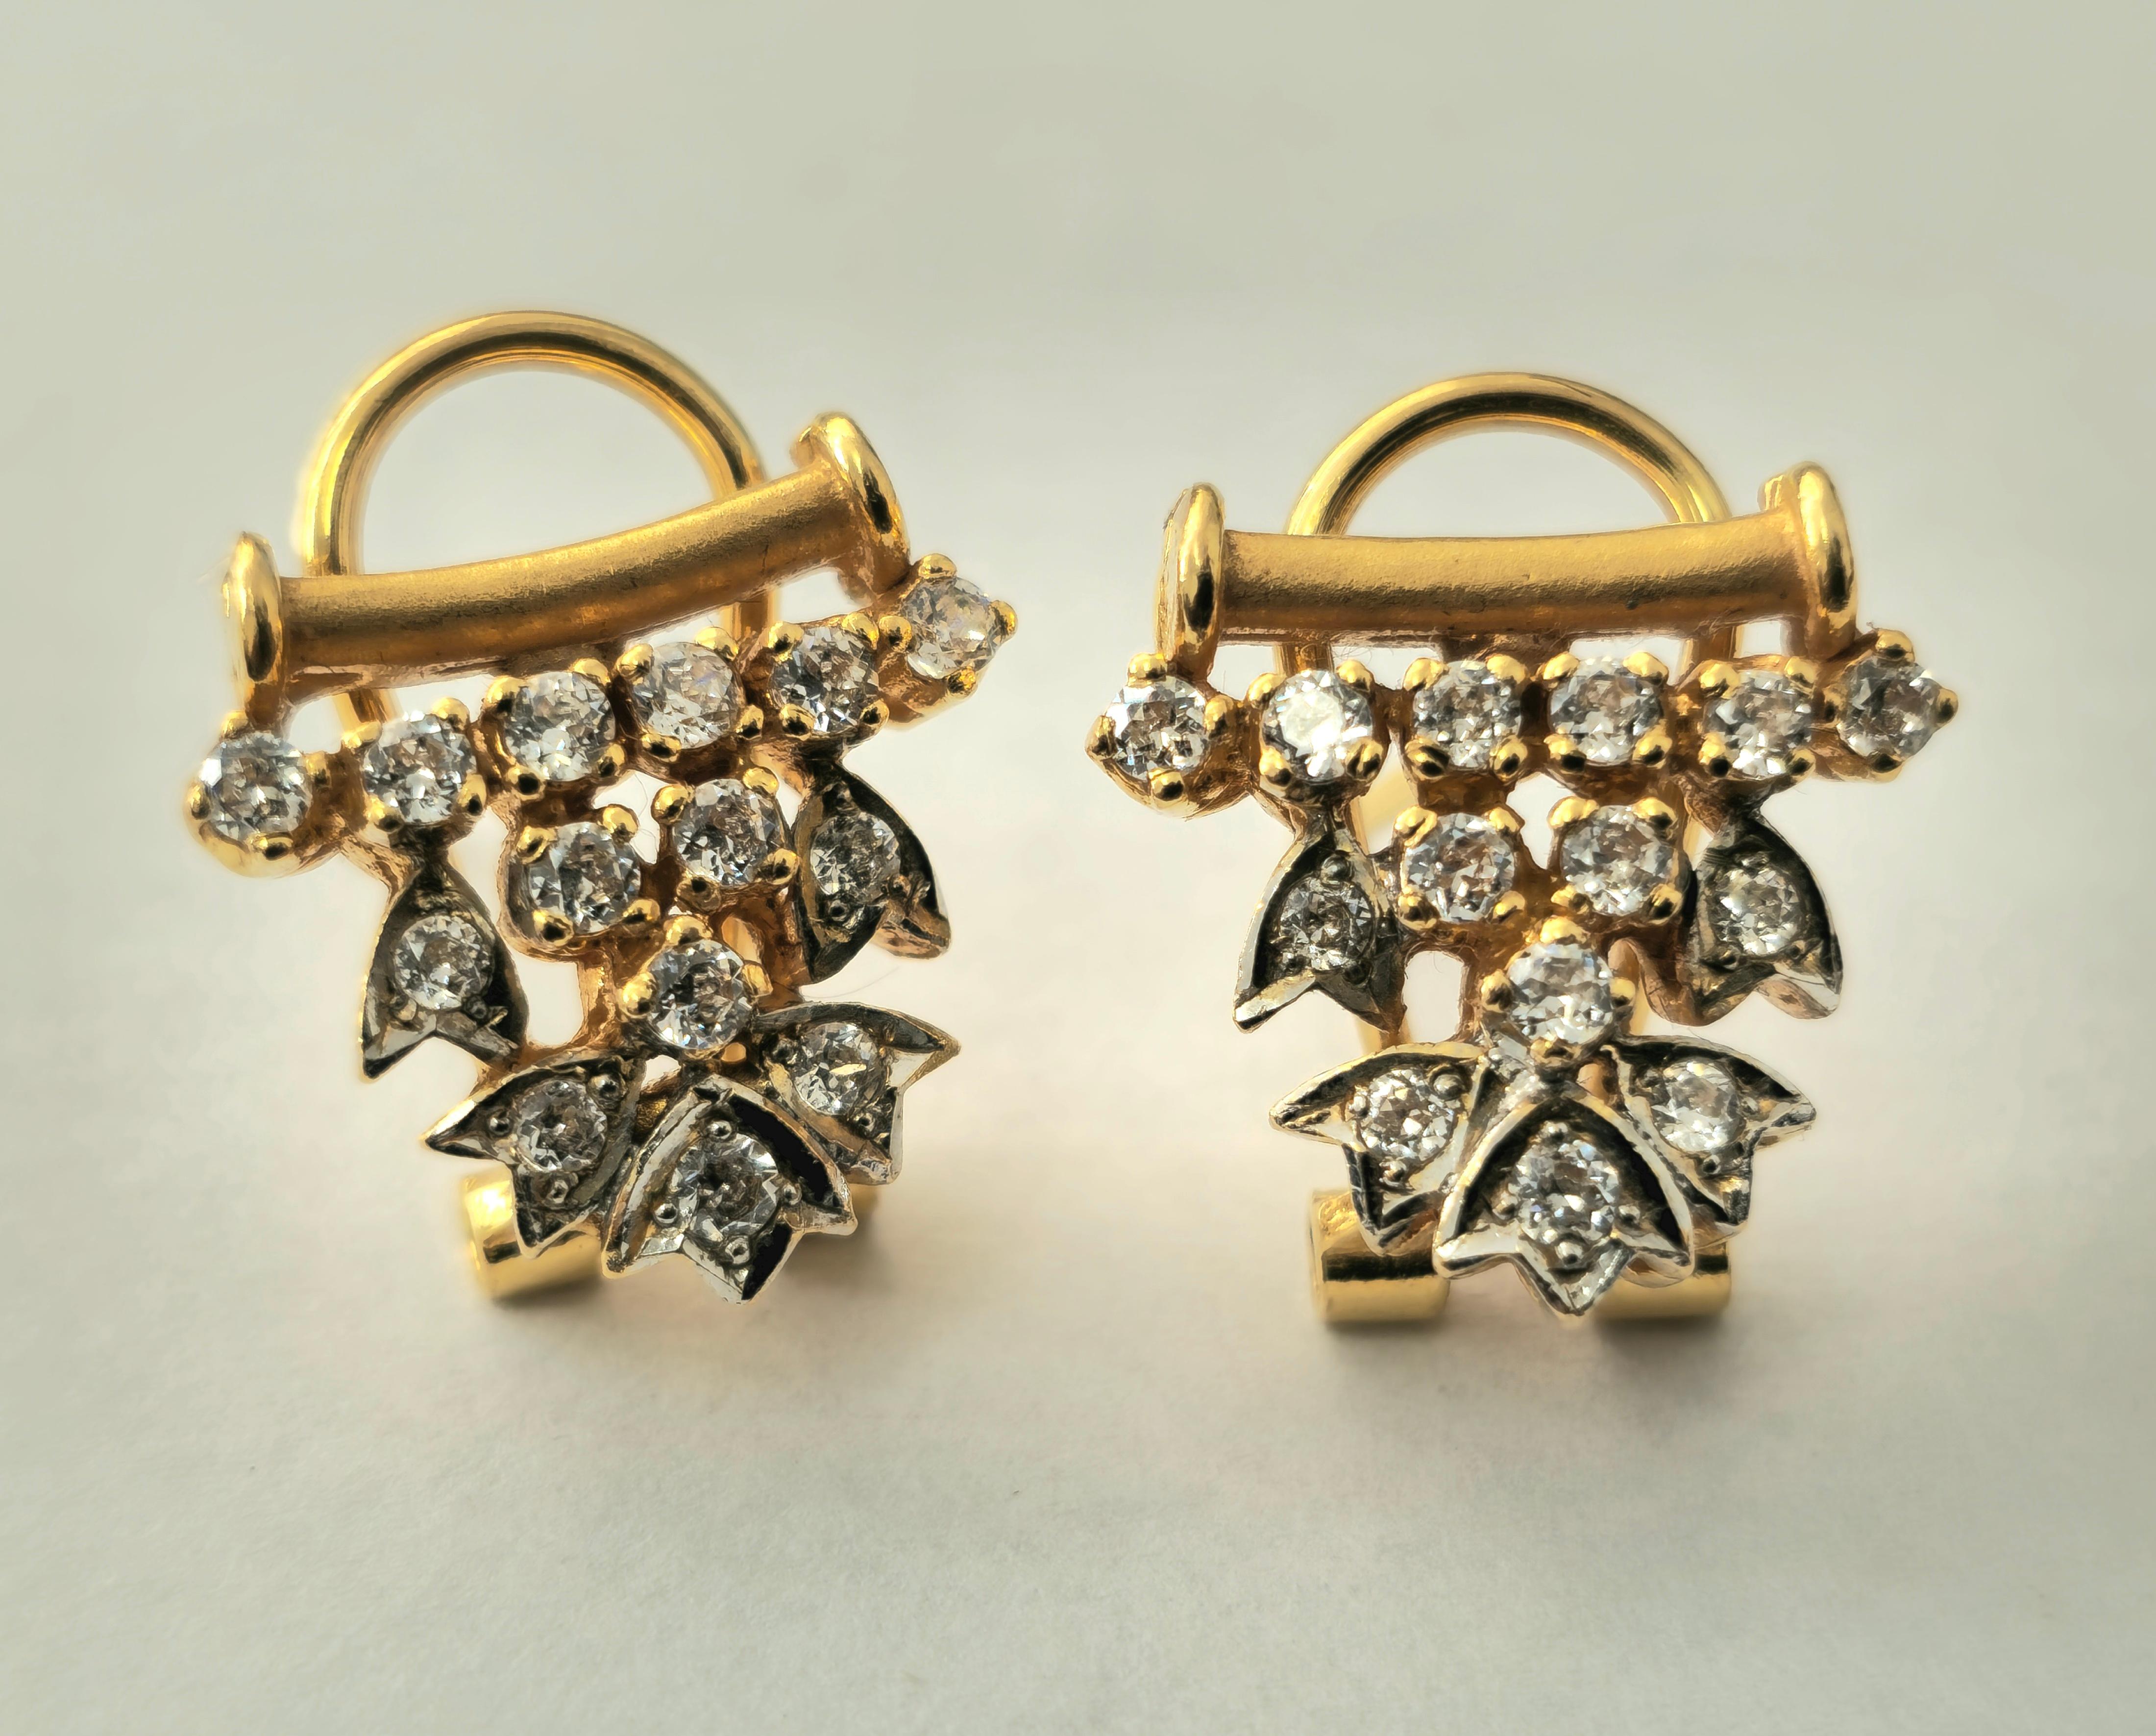 Brilliant Cut 0.83 Carat Diamond Earrings in 18k Gold For Sale